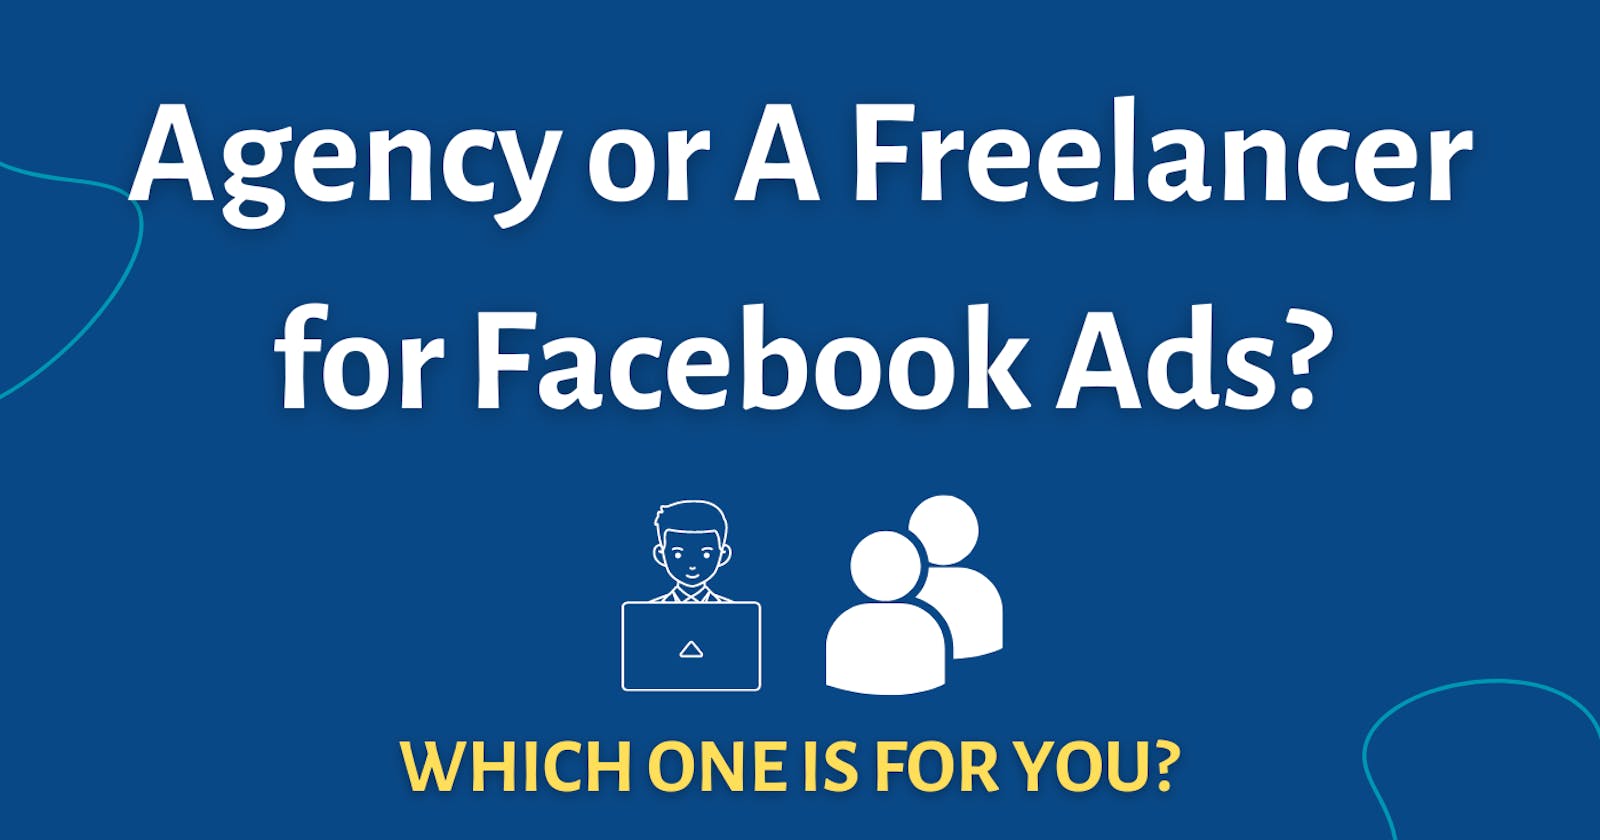 Agency or A Freelancer for Facebook Ads?